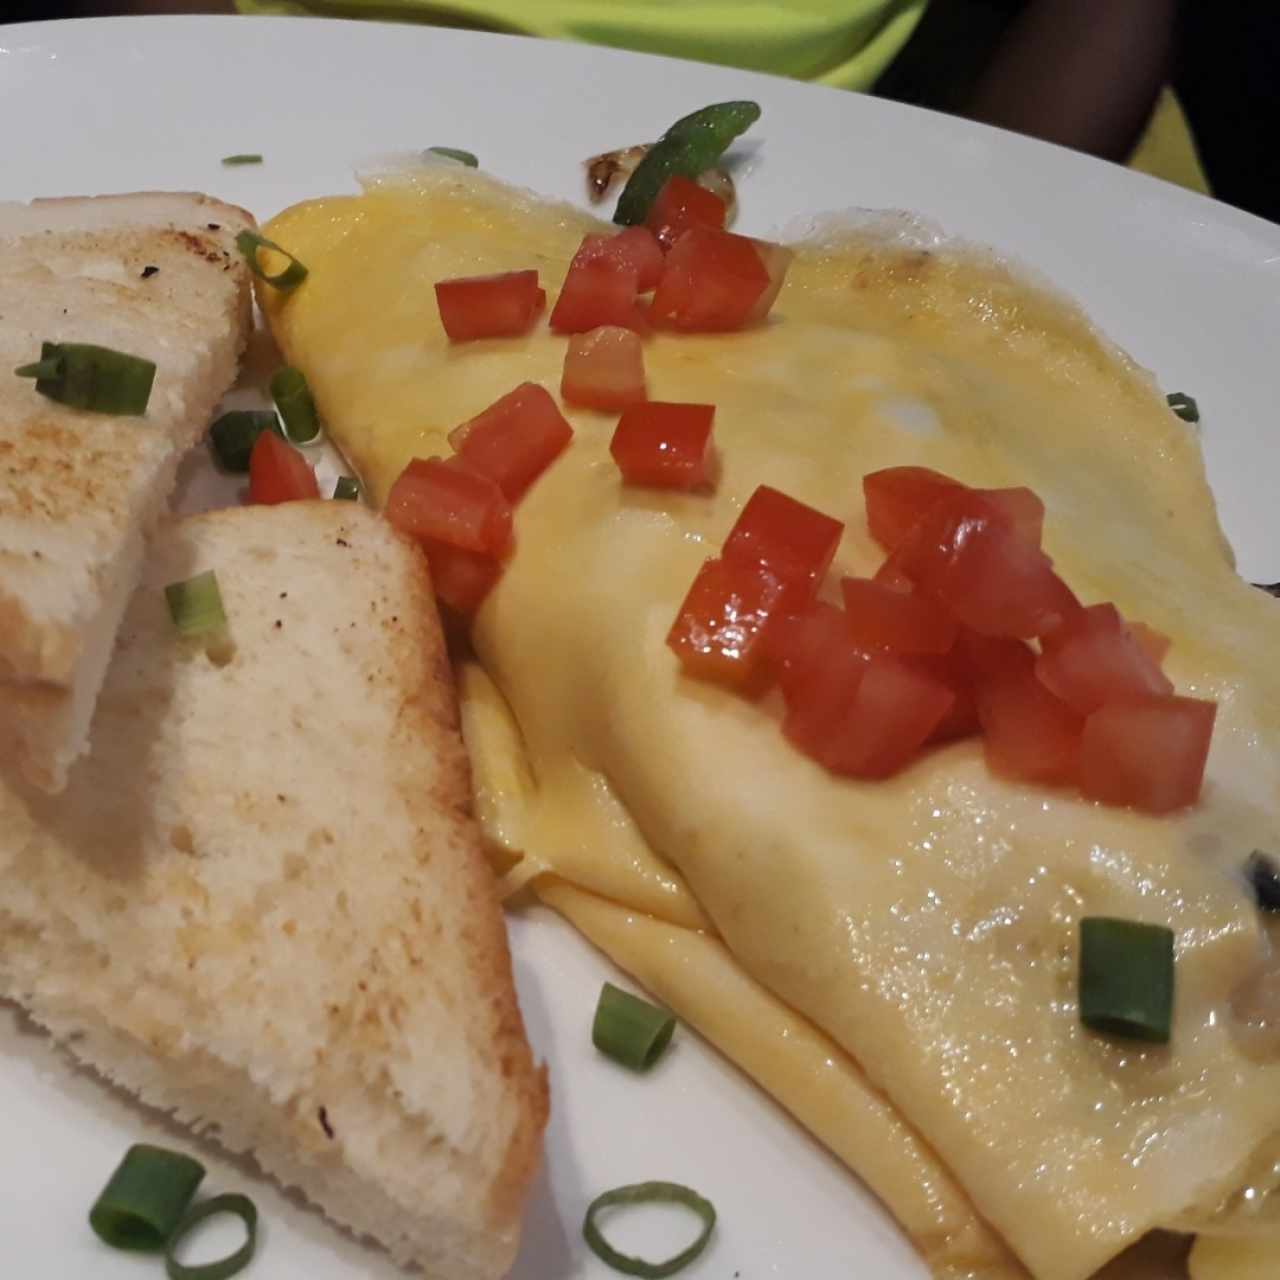 Veggie omelette